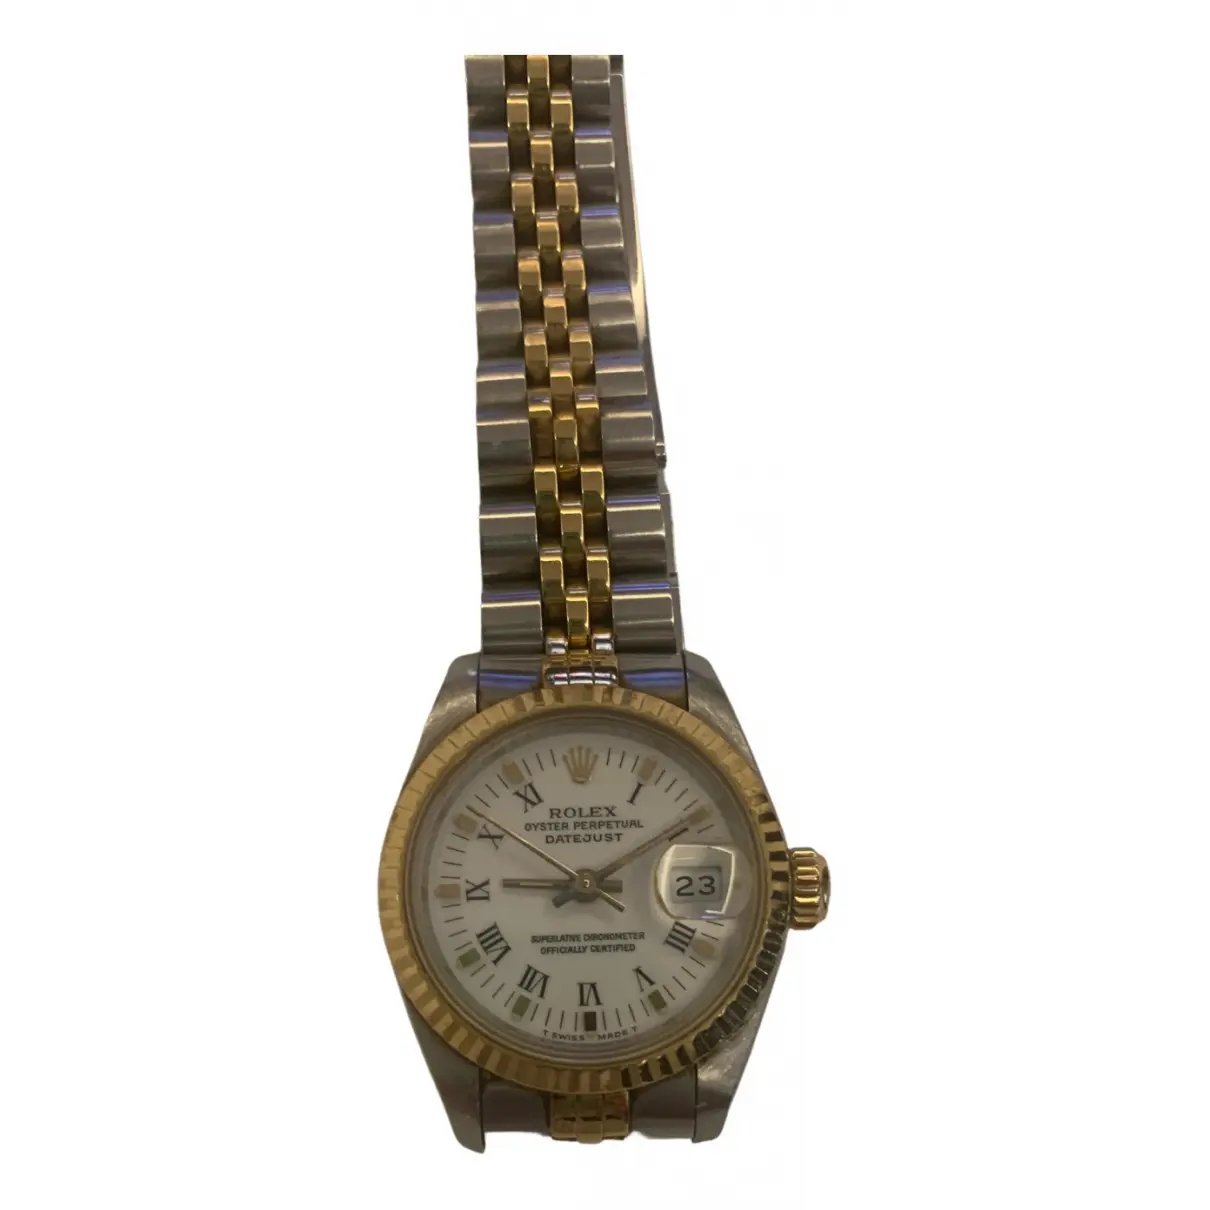 Datejust watch Rolex - Vintage